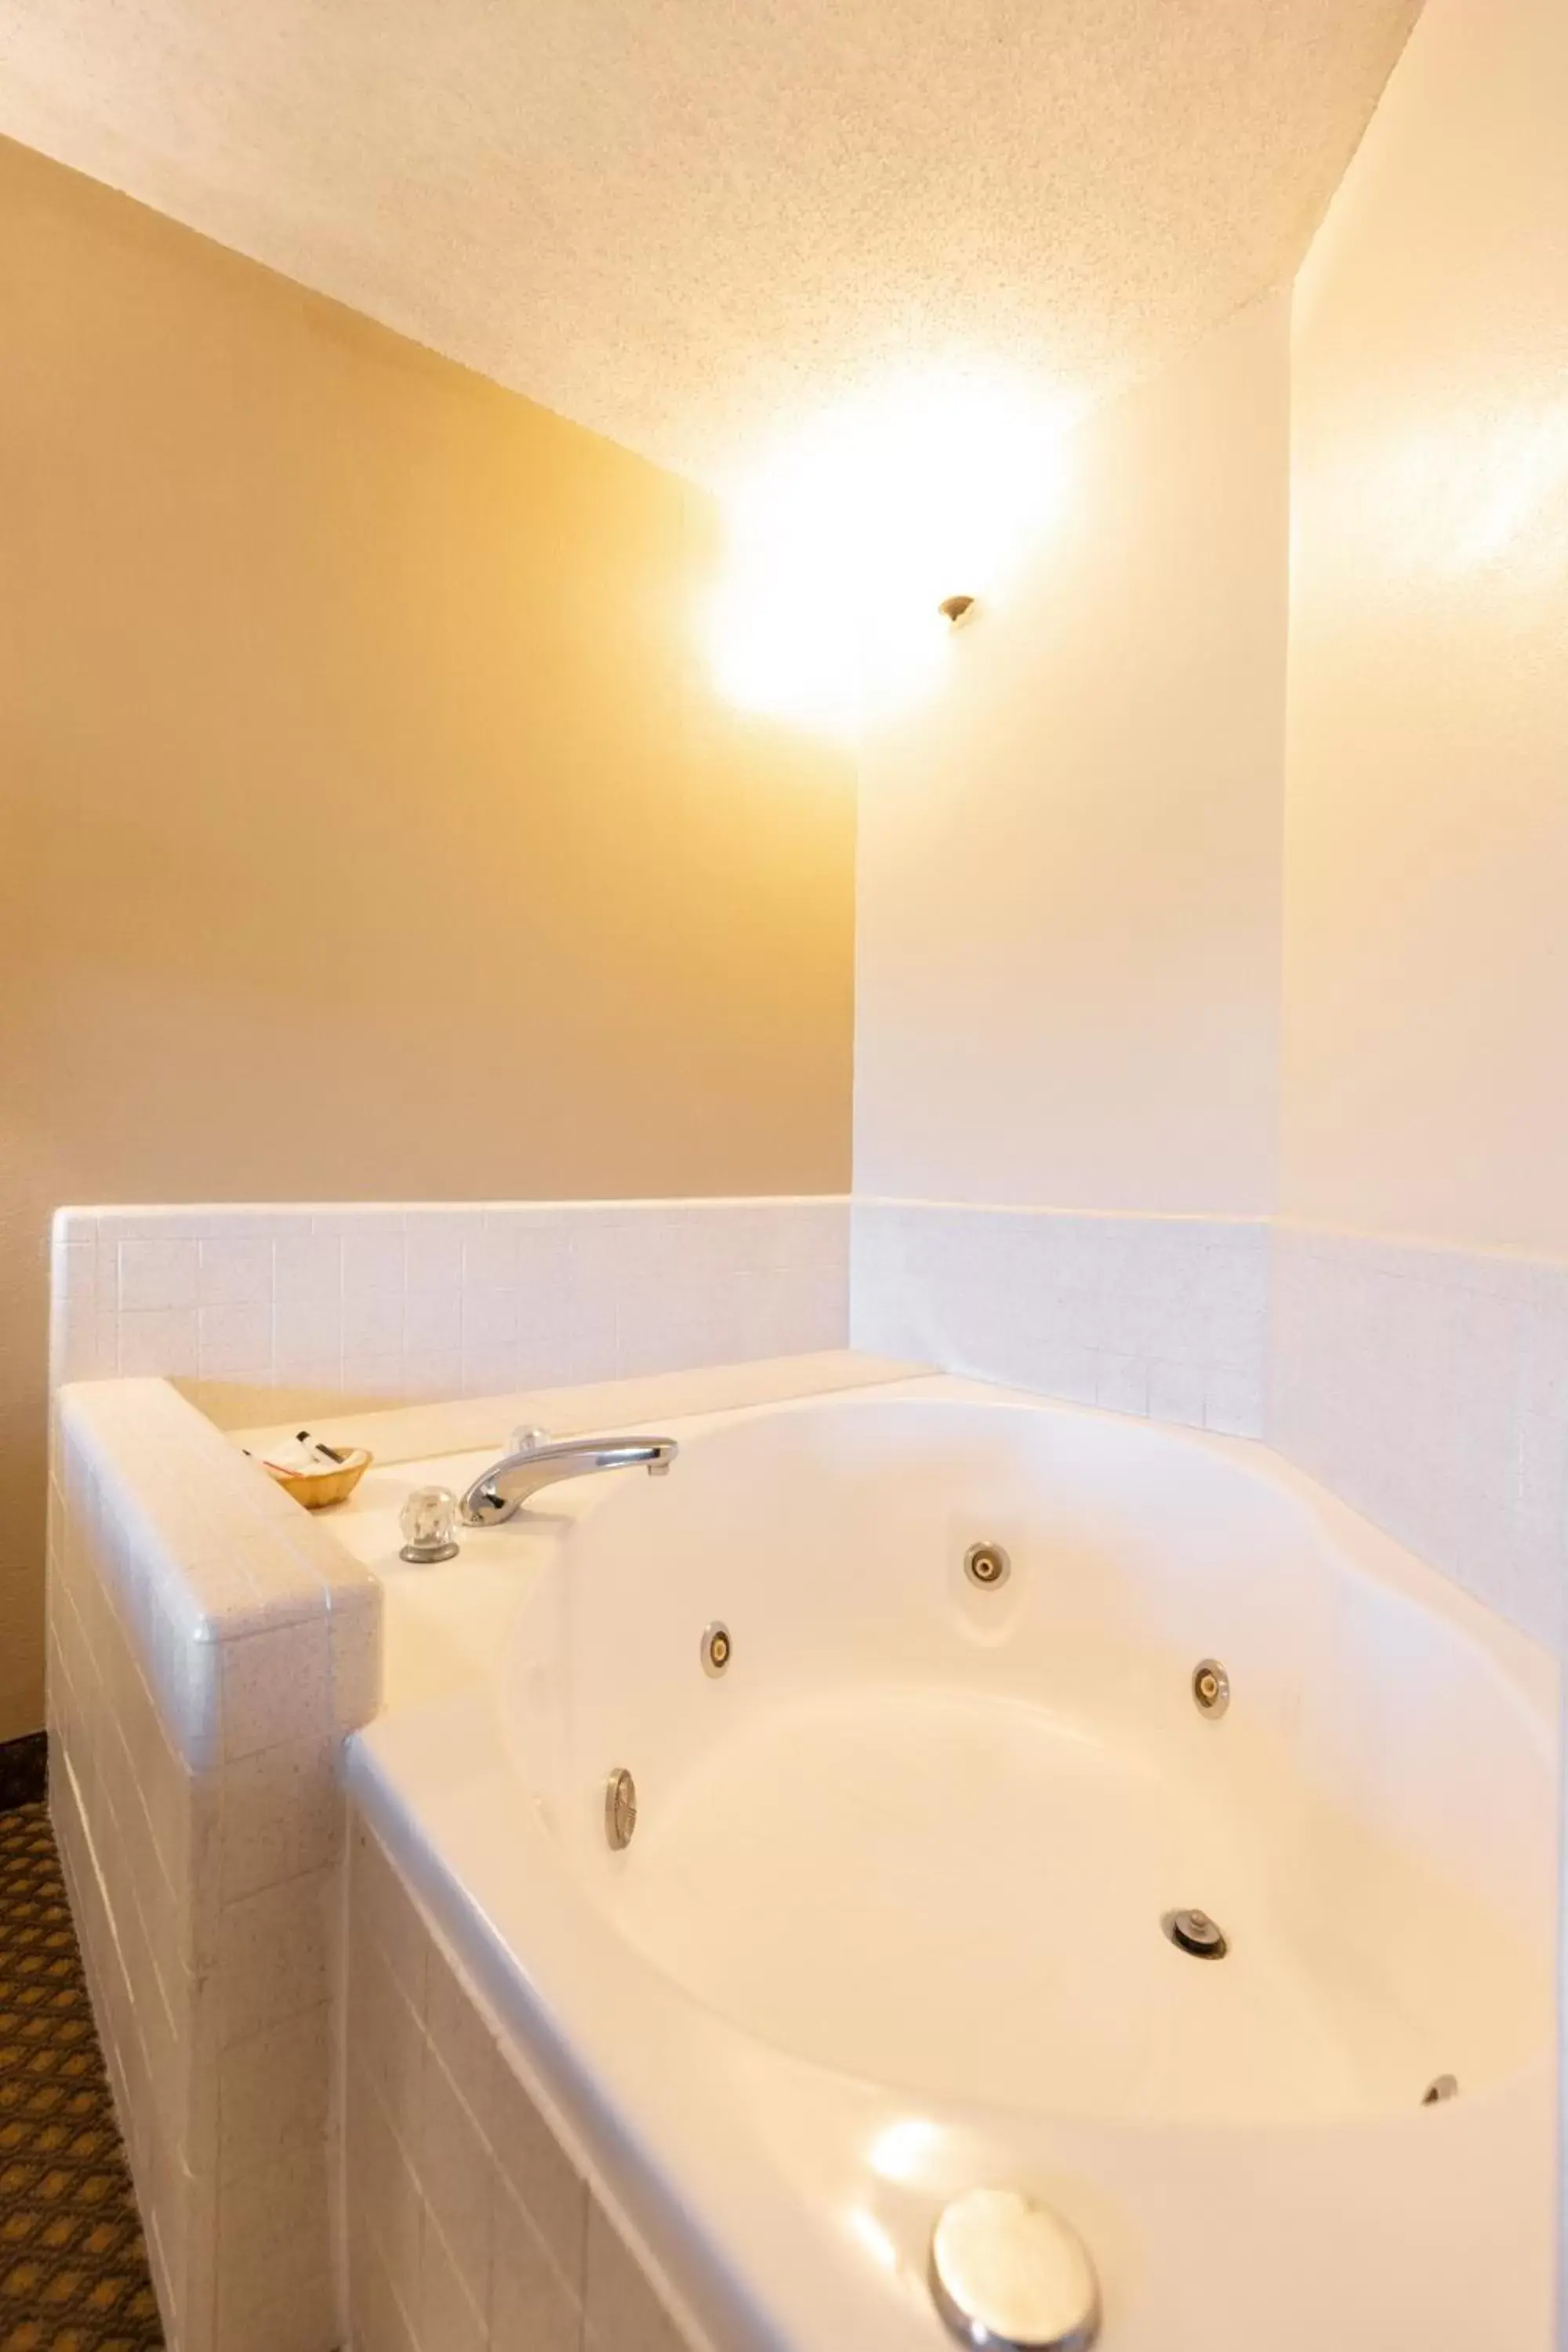 Area and facilities, Bathroom in Days Inn by Wyndham Kuttawa/Eddyville